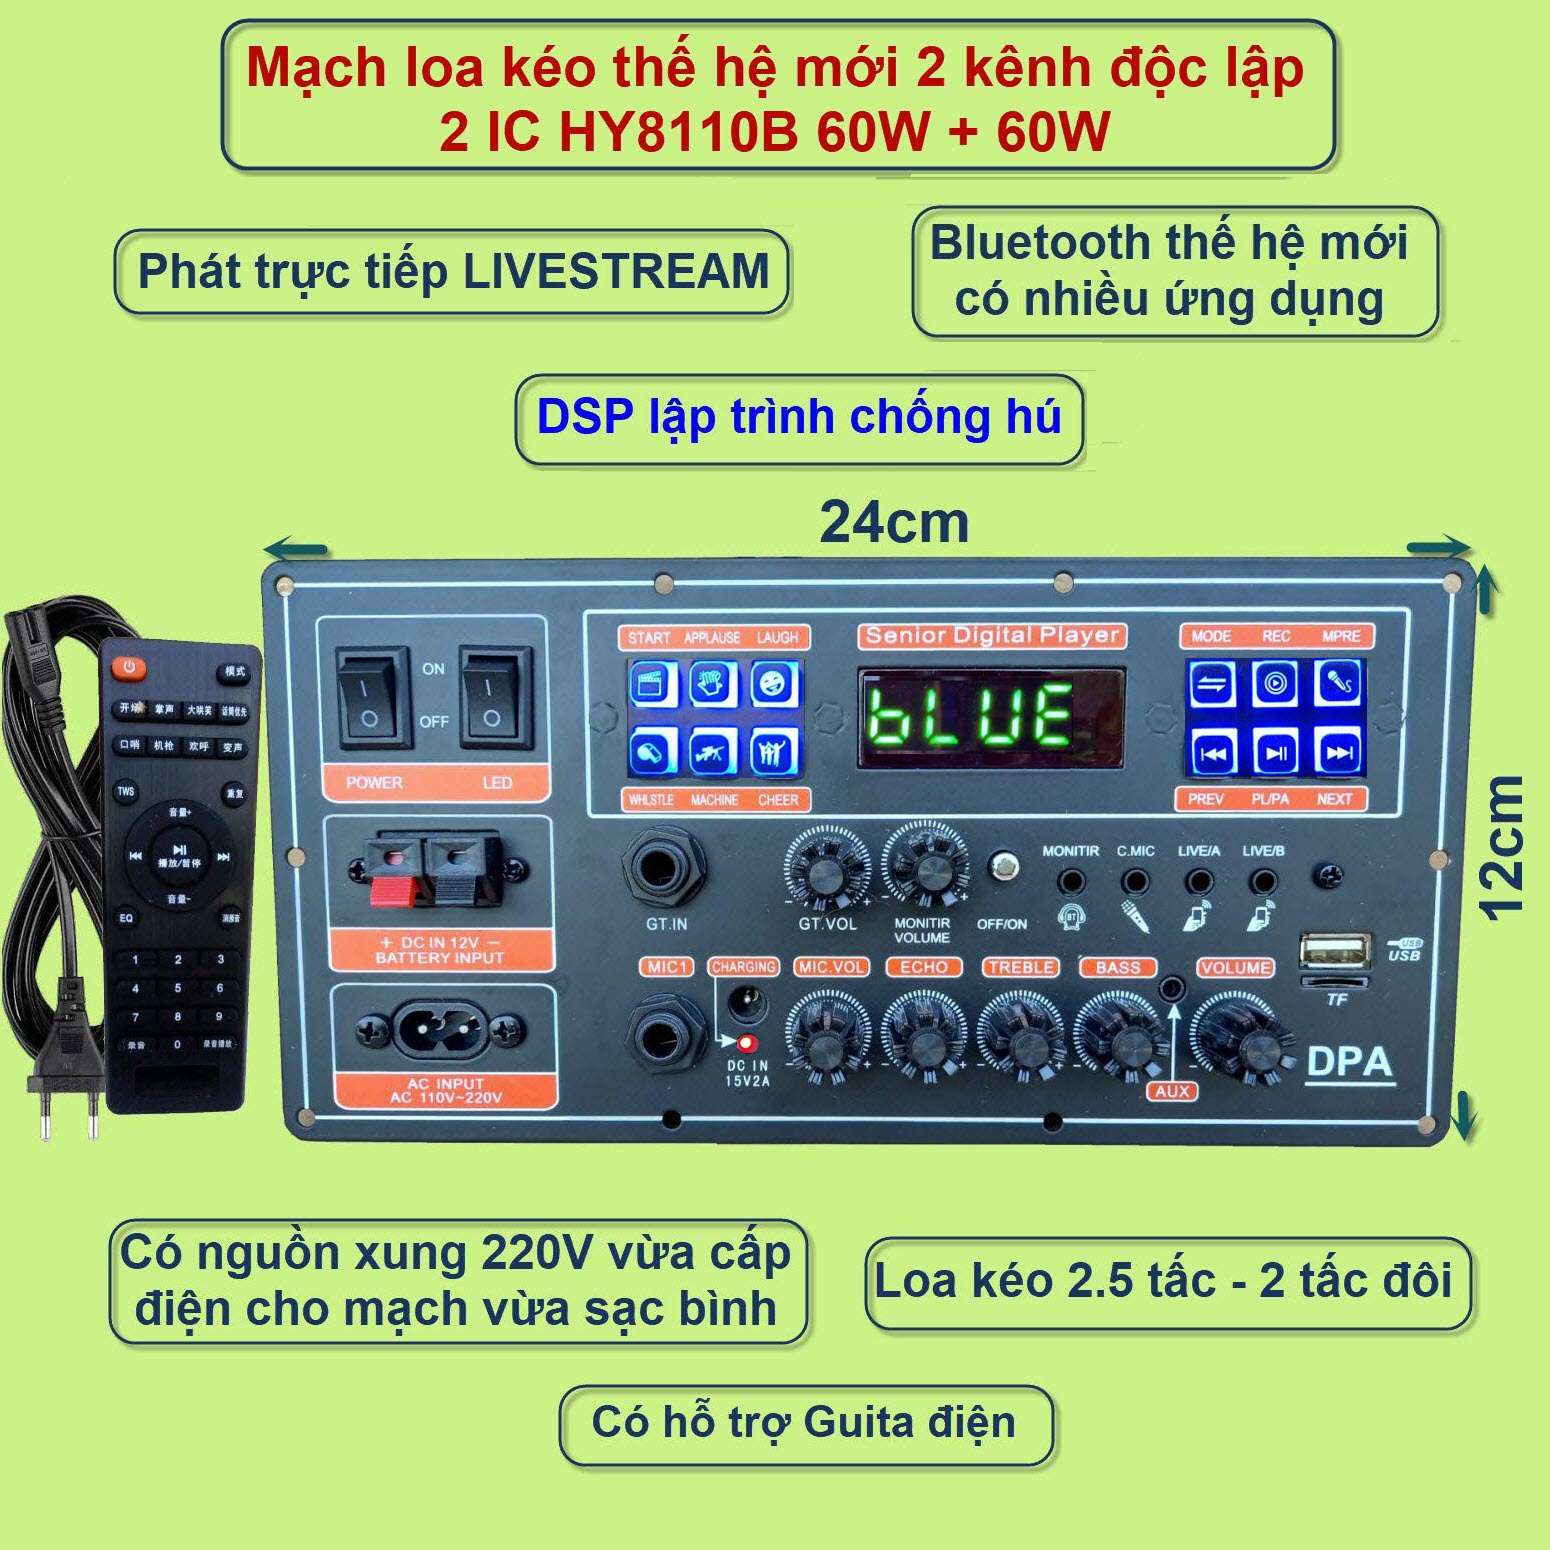 Mạch loa kéo Livestream 2 kênh riêng biệt 2 IC HY8110B 60W + 60W DSP lập trình chống hú có nguồn xung 220V